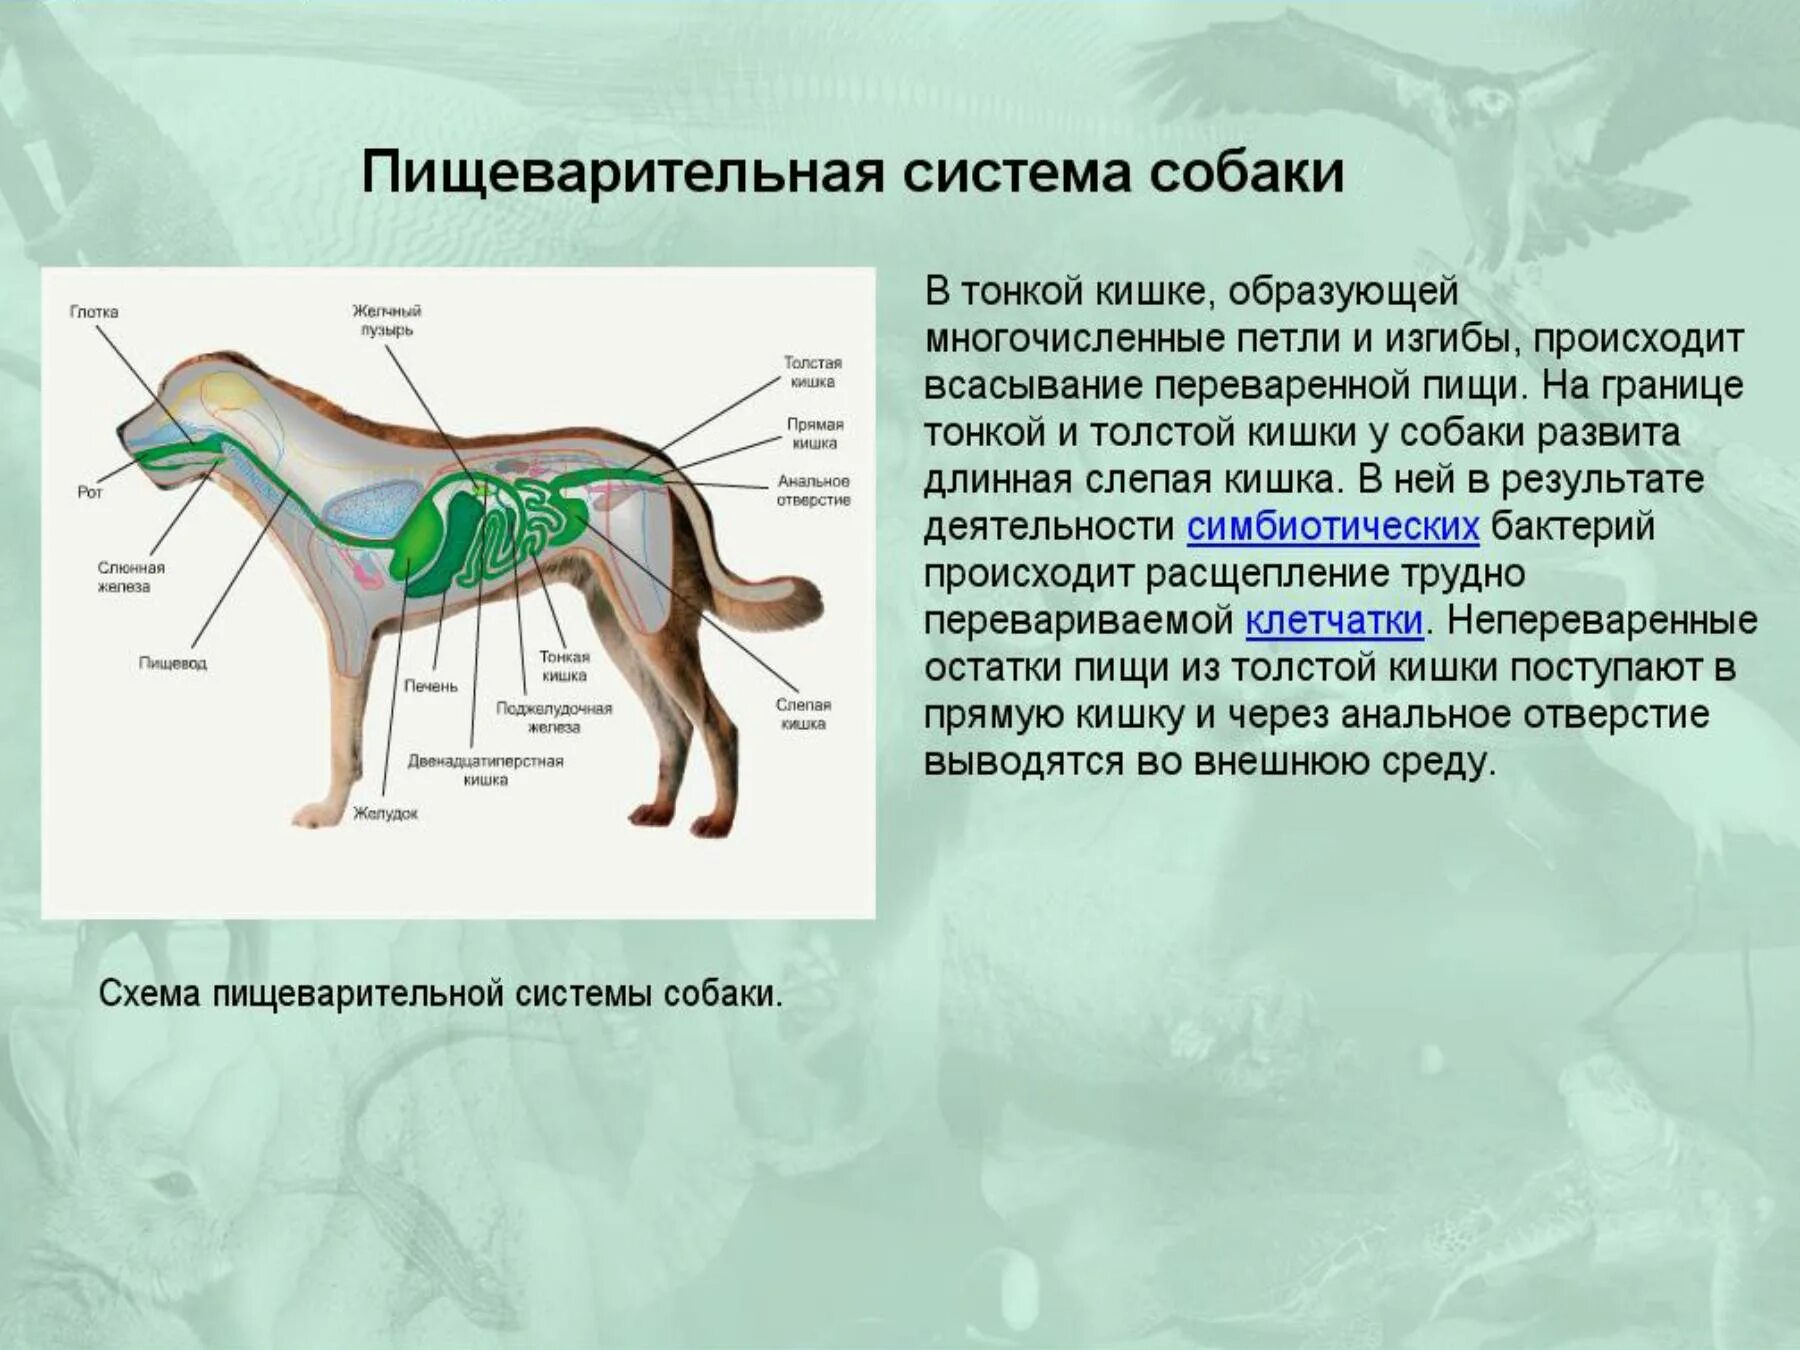 Биология млекопитающие пищеварительная система. Система органов собаки таблица. Внутреннее строение млекопитающих 7 класс биология. Пищеварительная система собаки биология 7 класс.